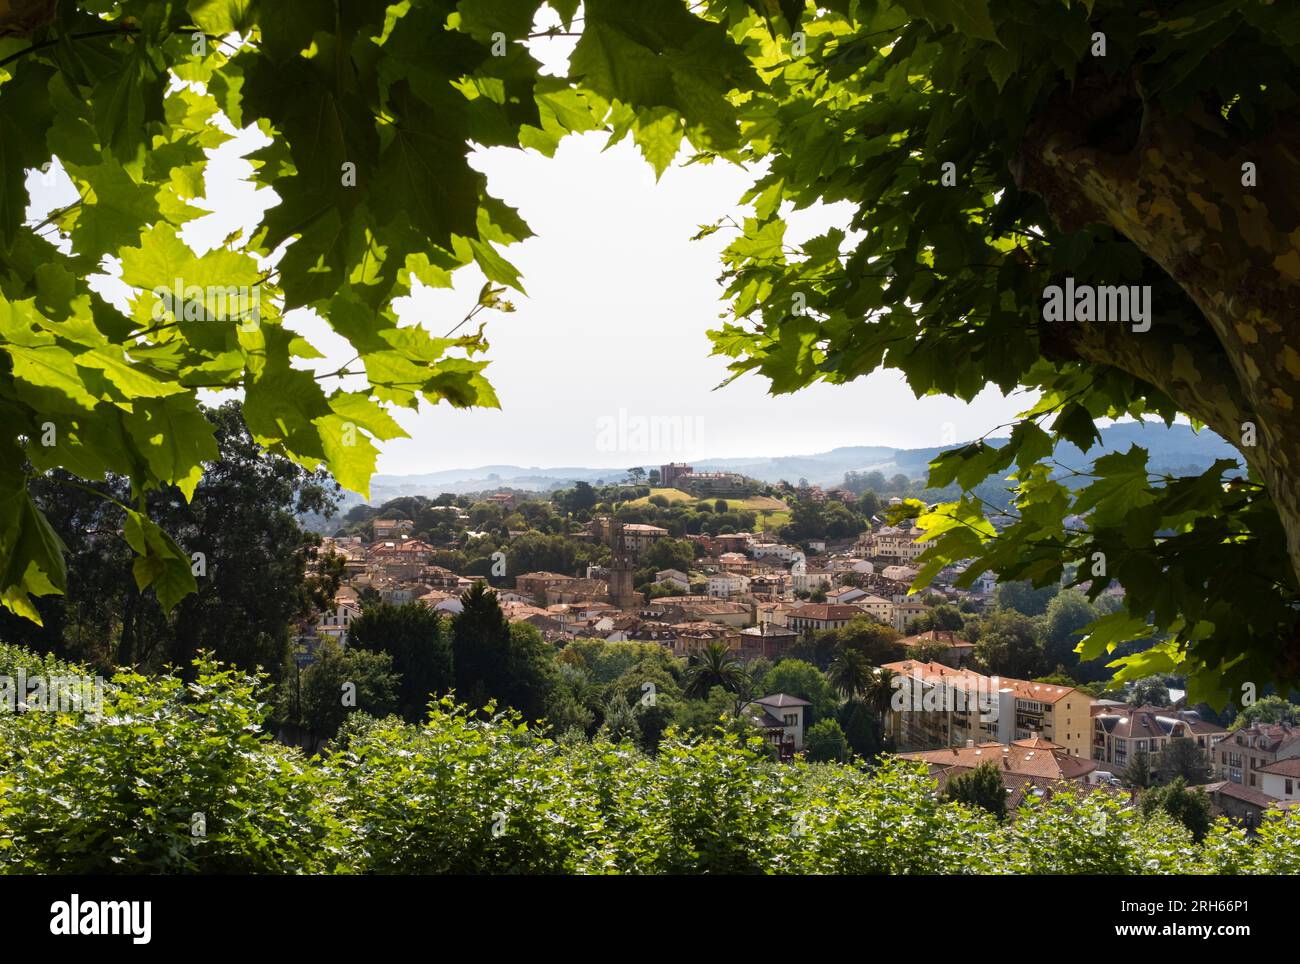 Vue sur le village de Comillas encadré par la végétation à l'aube. Considéré comme l'un des plus beaux villages d'Espagne. Banque D'Images